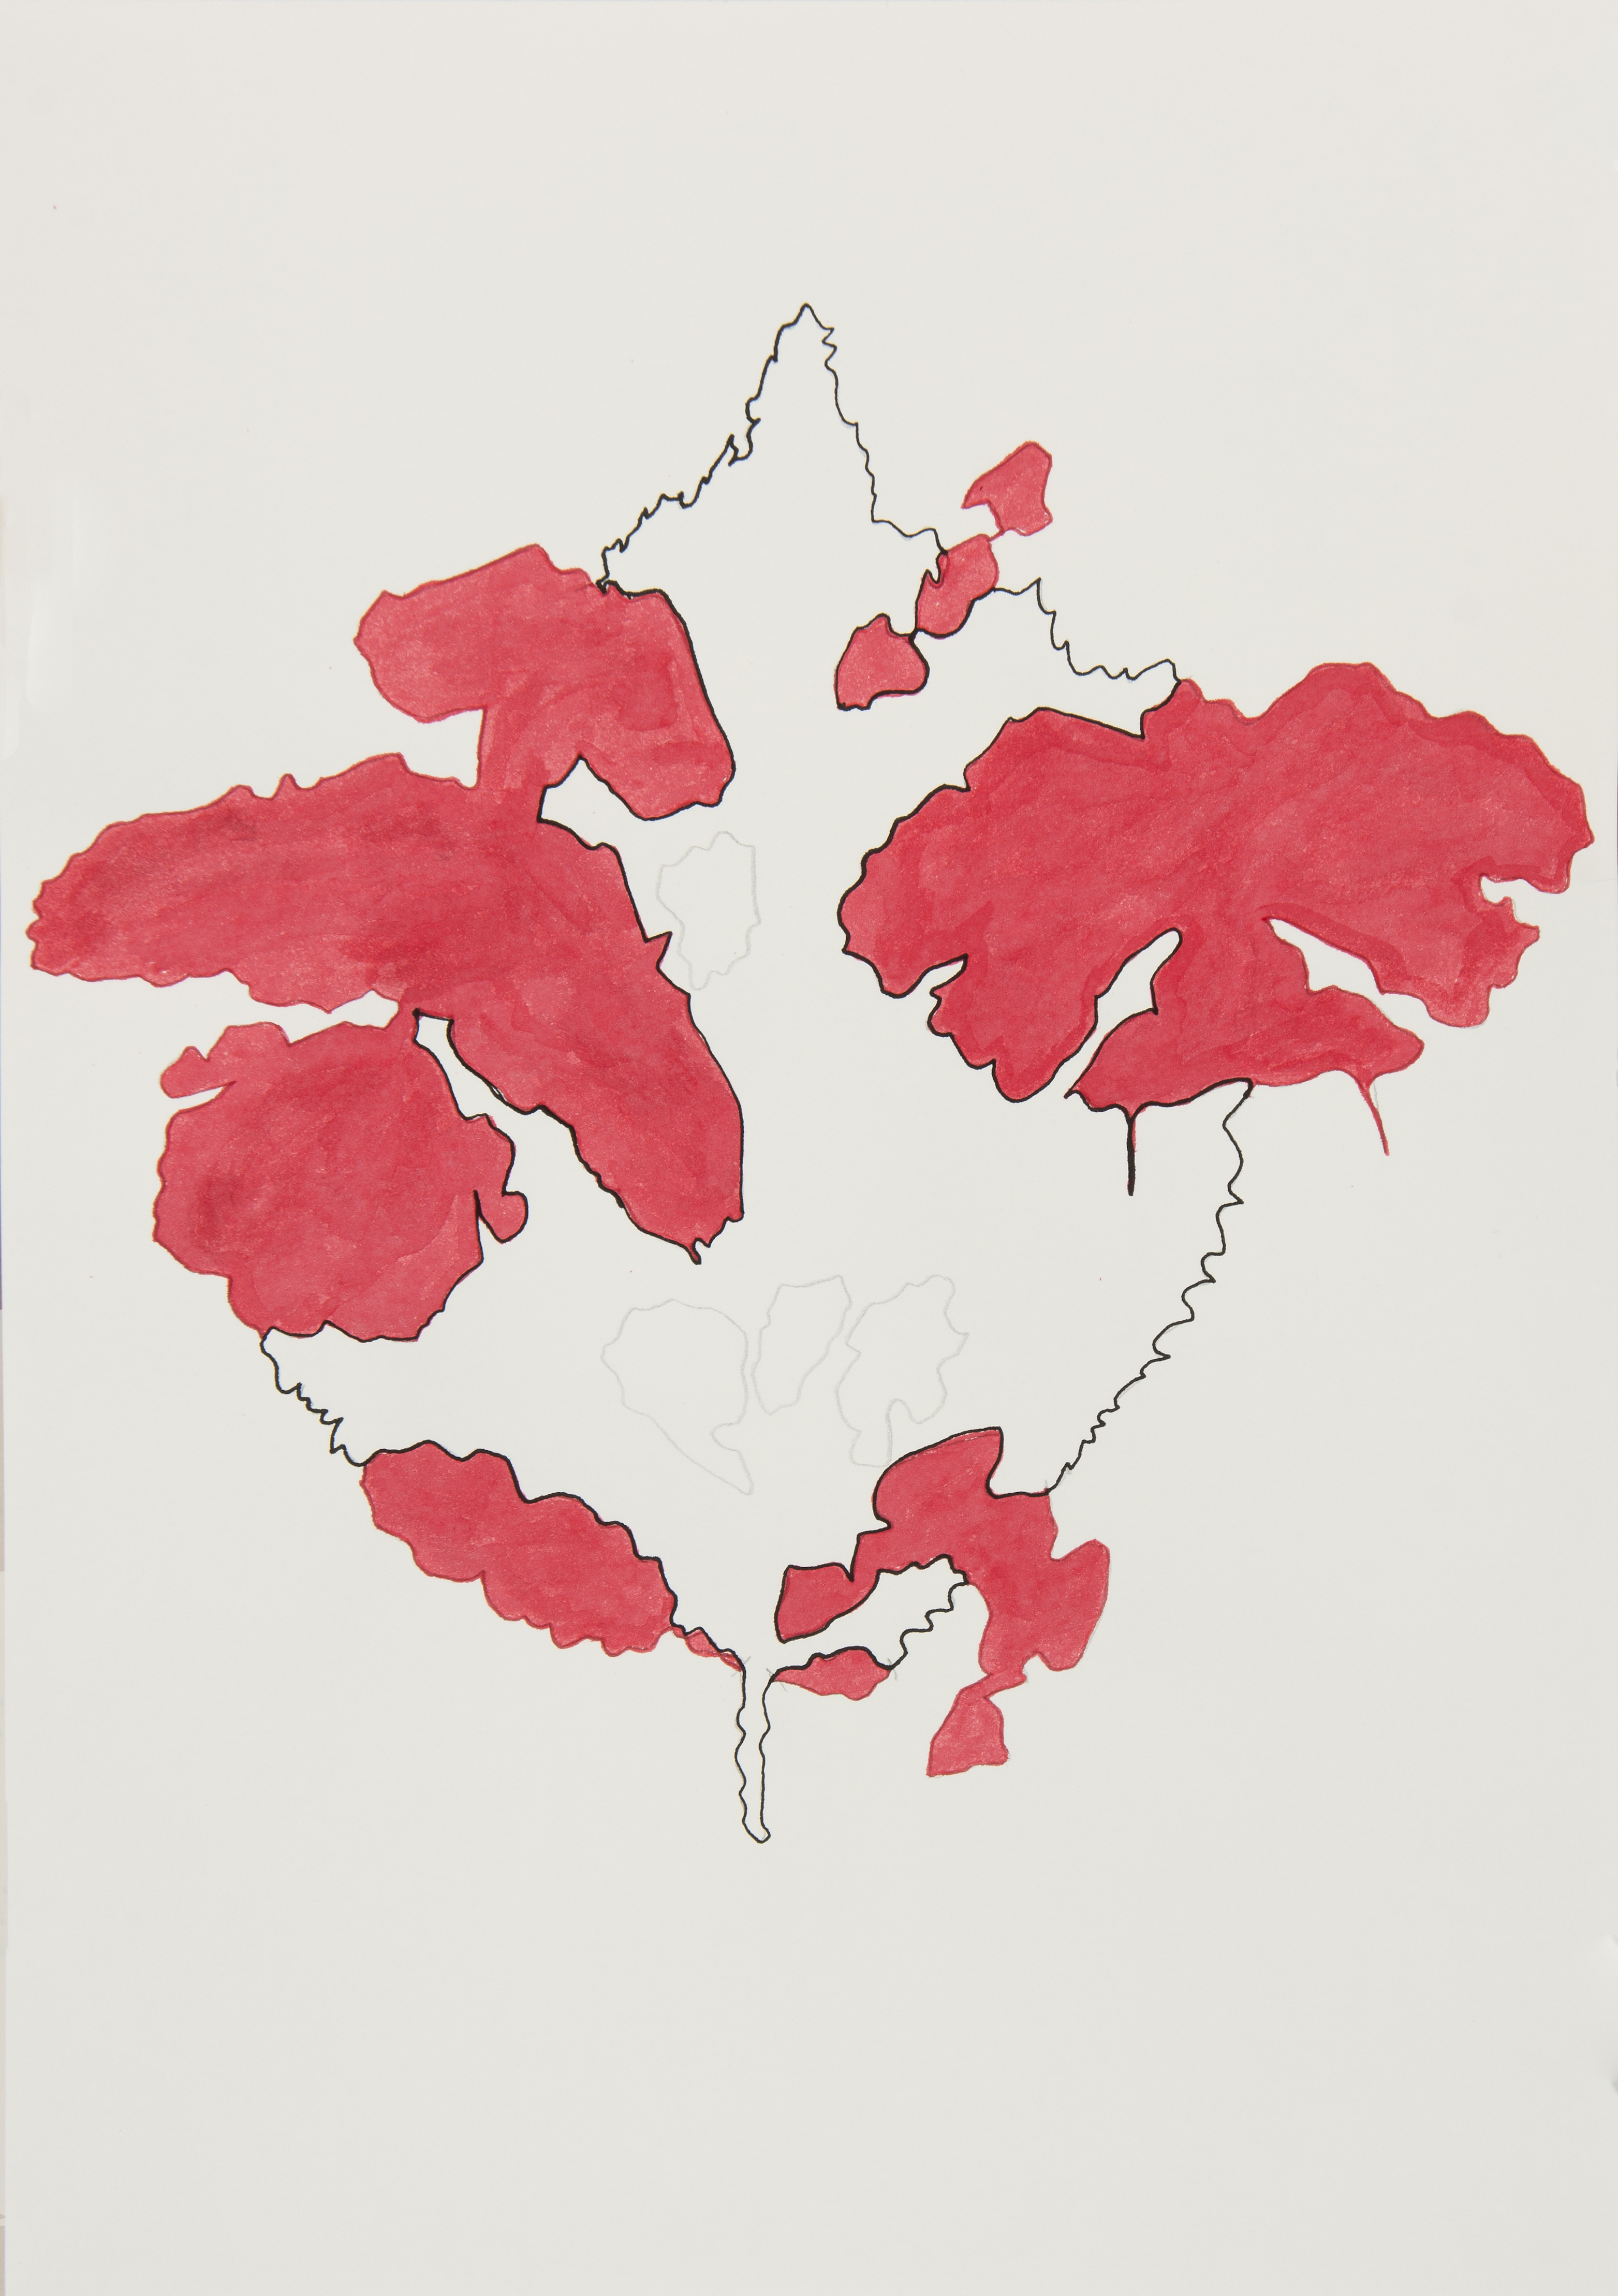 Karin Schroeder, folia chartae, lückenhafte Blätter - neue Formationen, Blatt15-3, 2022, Bleistift und Tusche auf Papier, je 29,7 x 42 cm.jpg